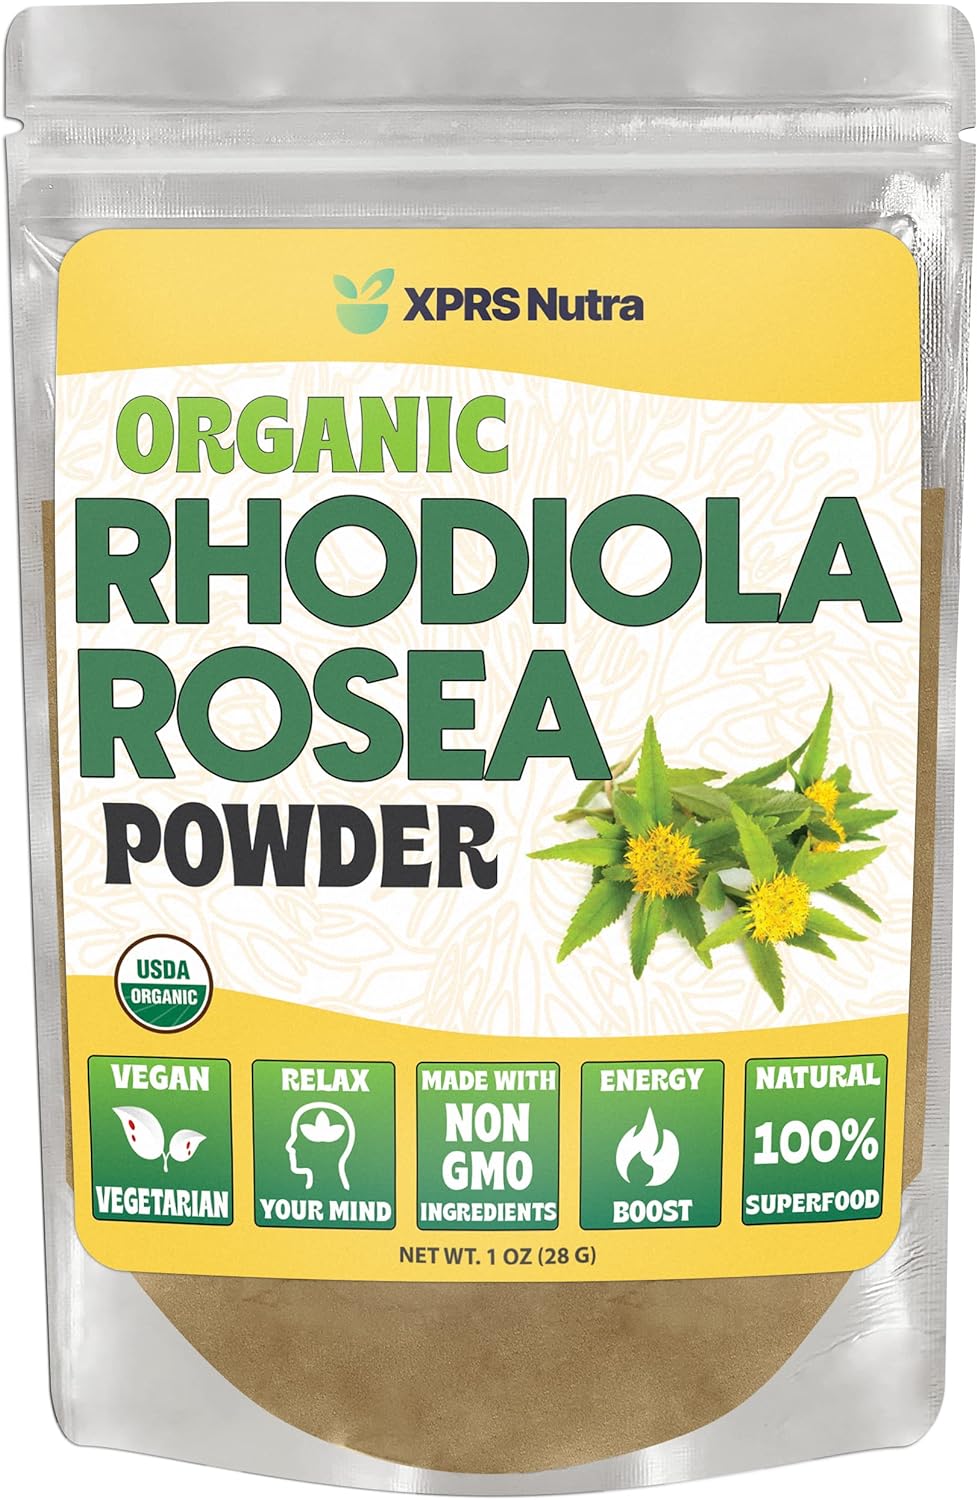 XPRS Nutra Organic Rhodiola Rosea Powder 1 Oz.